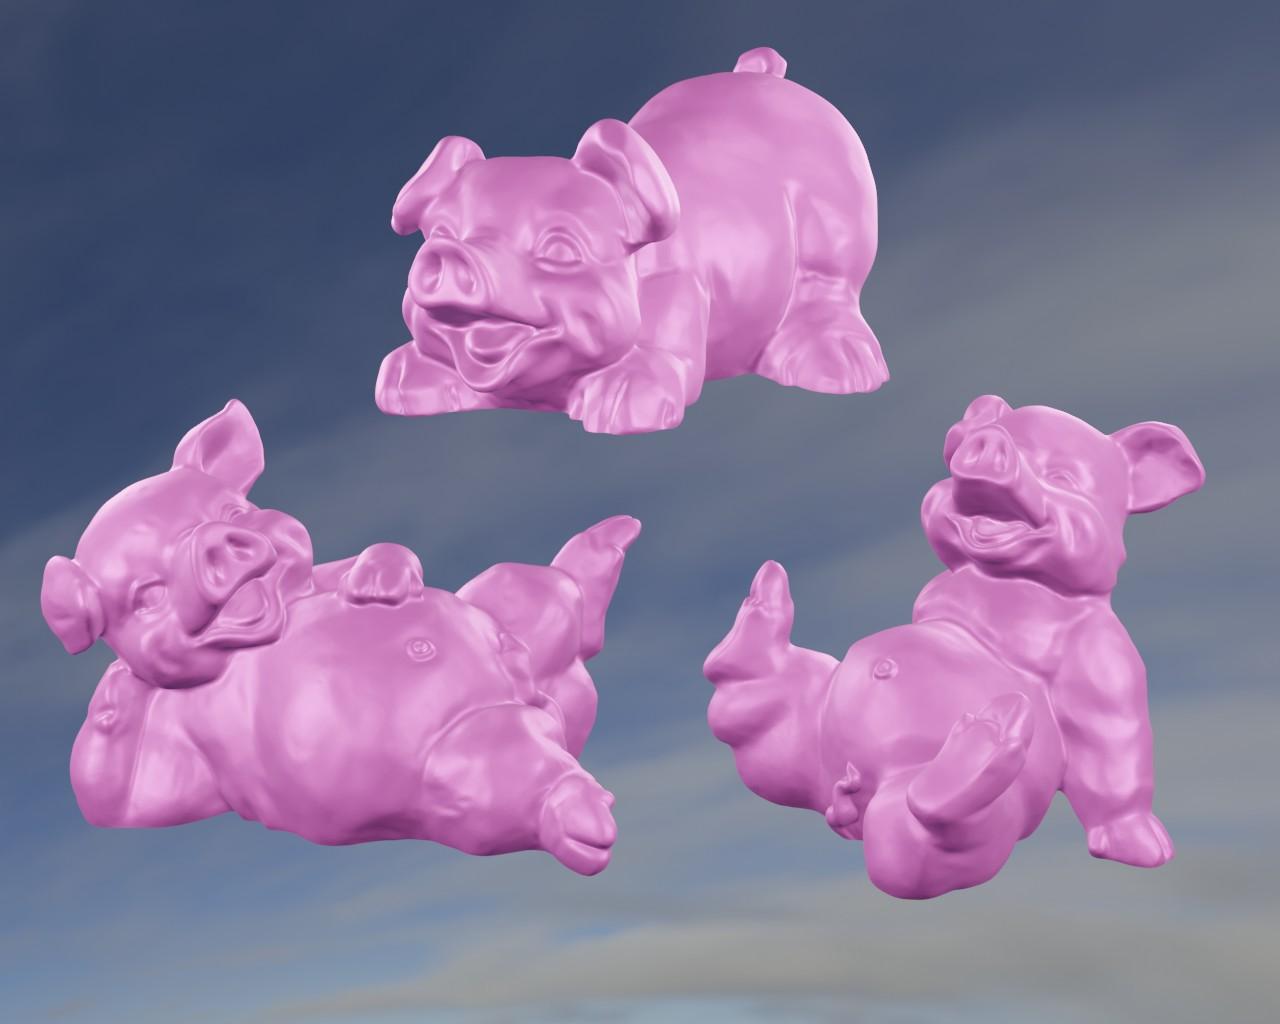 3 pig 3d model